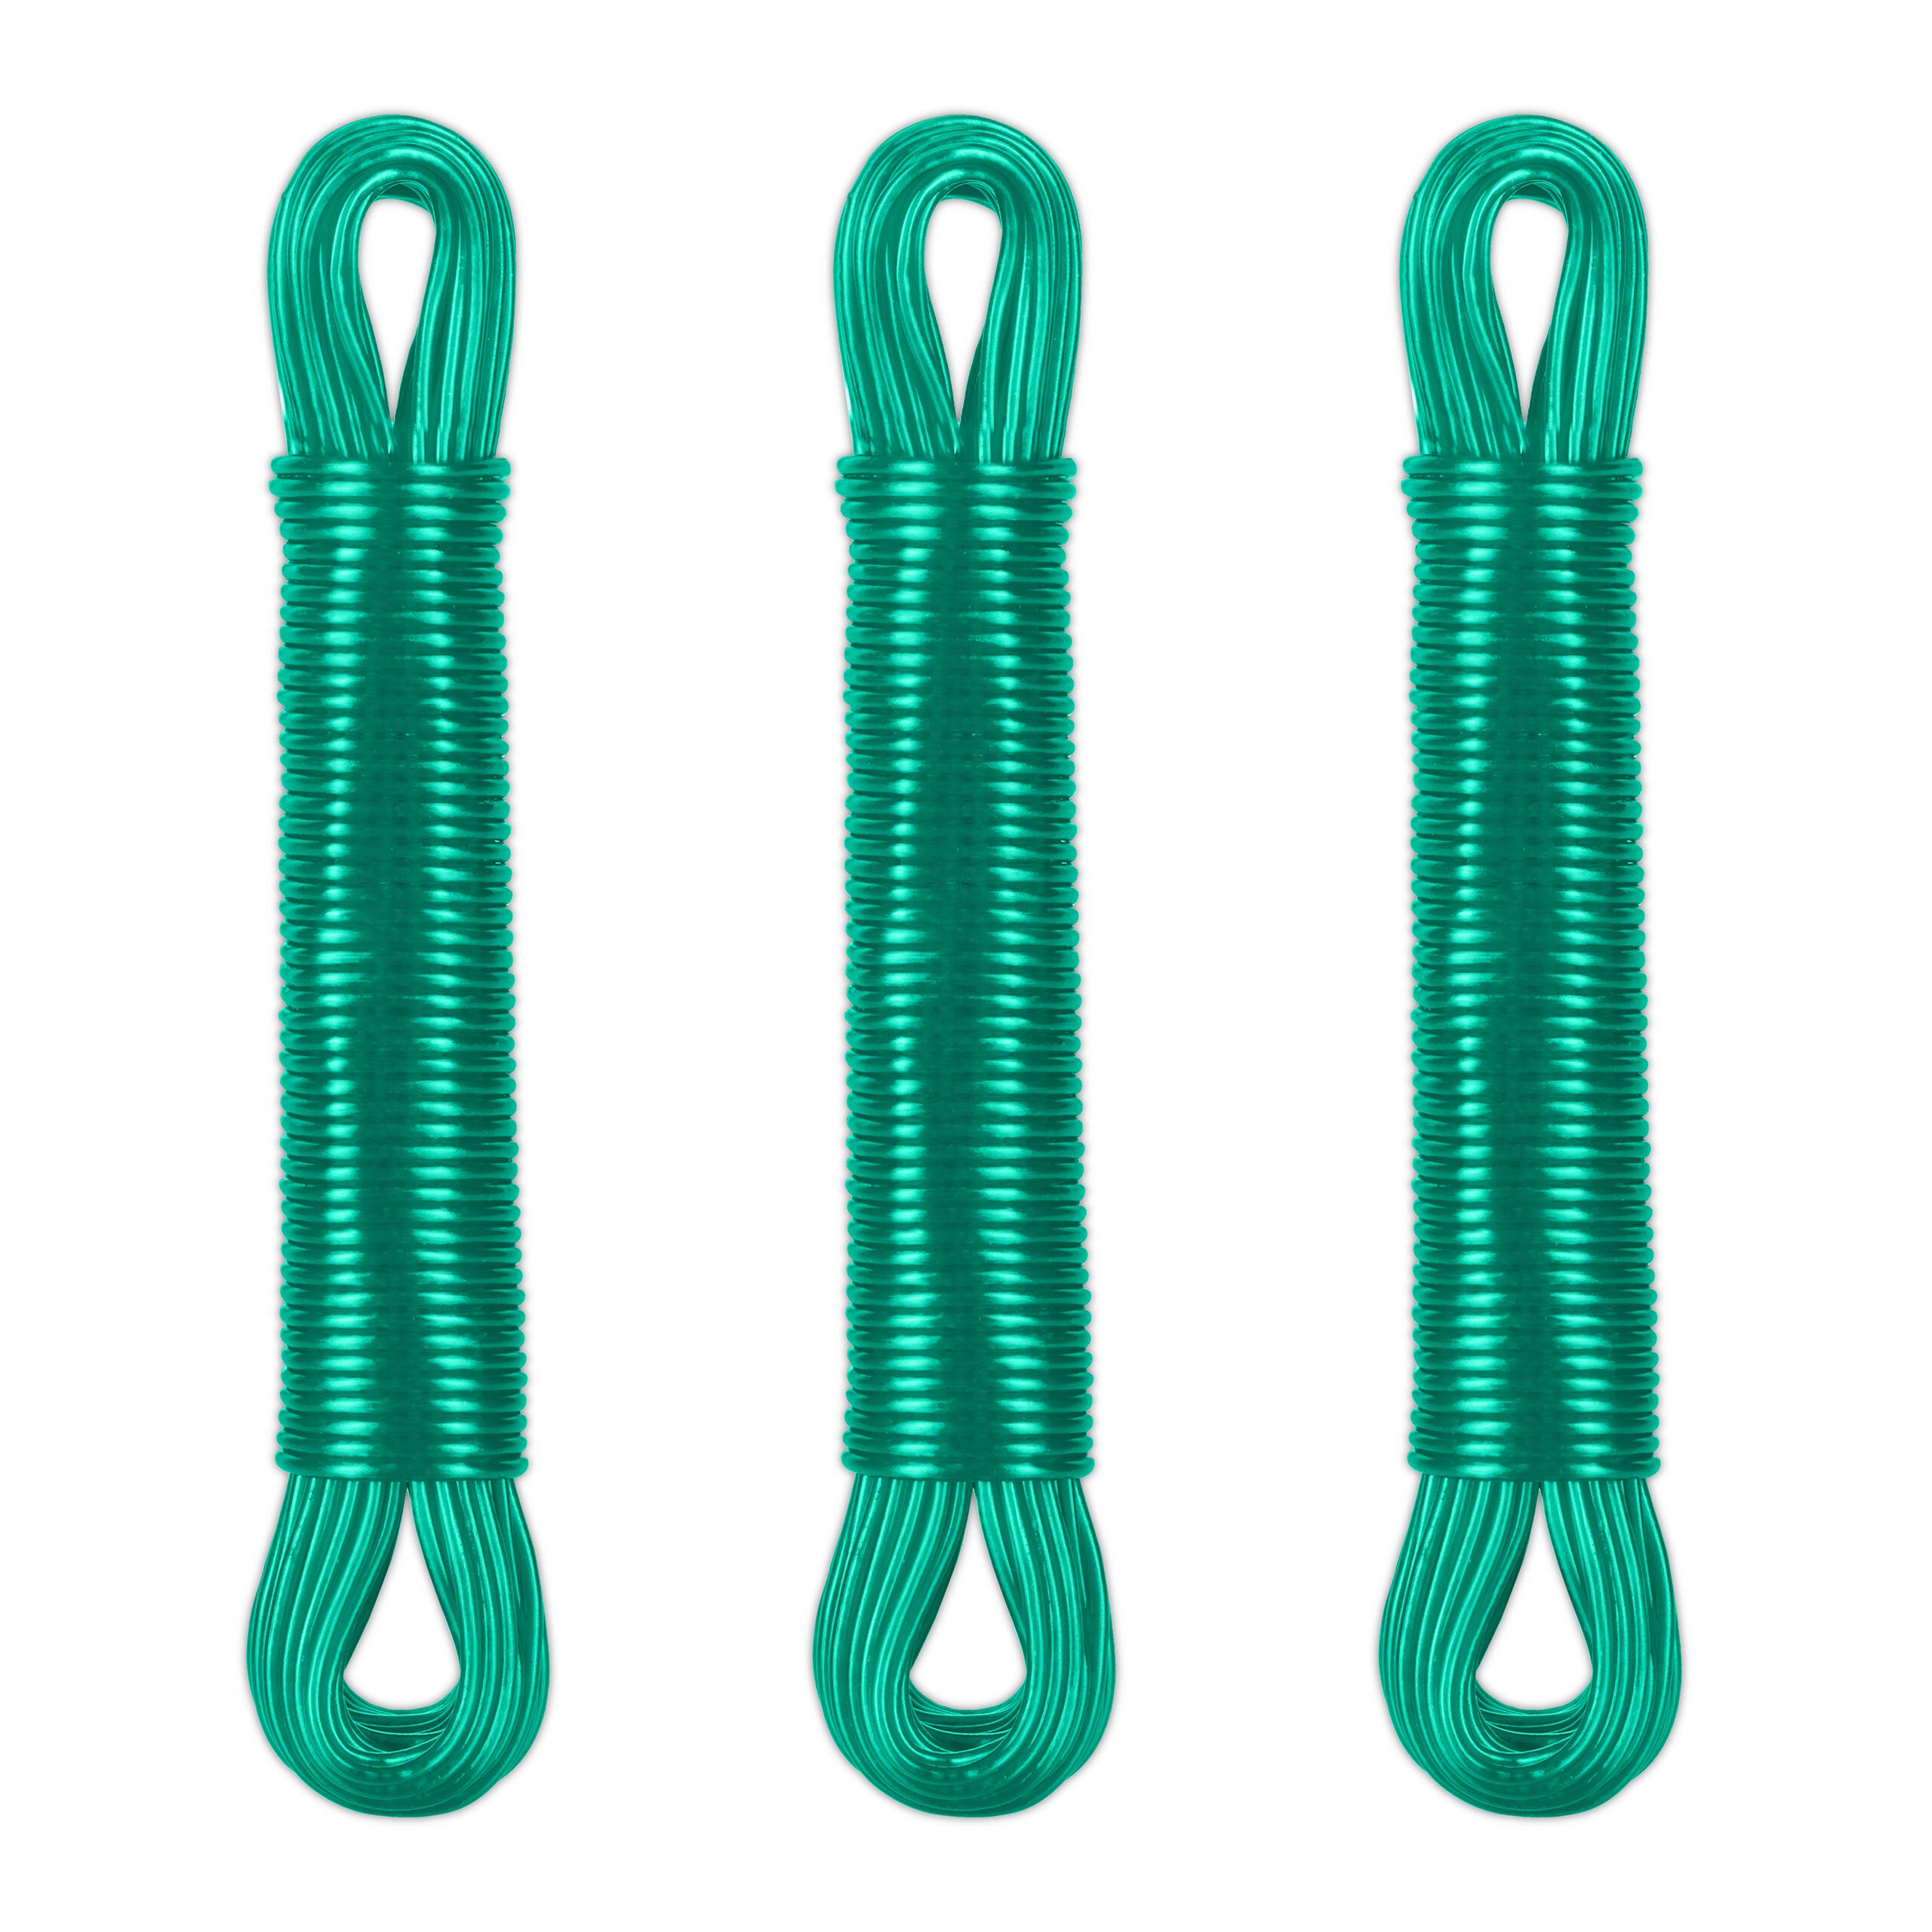 Corde à linge en PVC, vert, 5/32 x 50' de KINGCORD